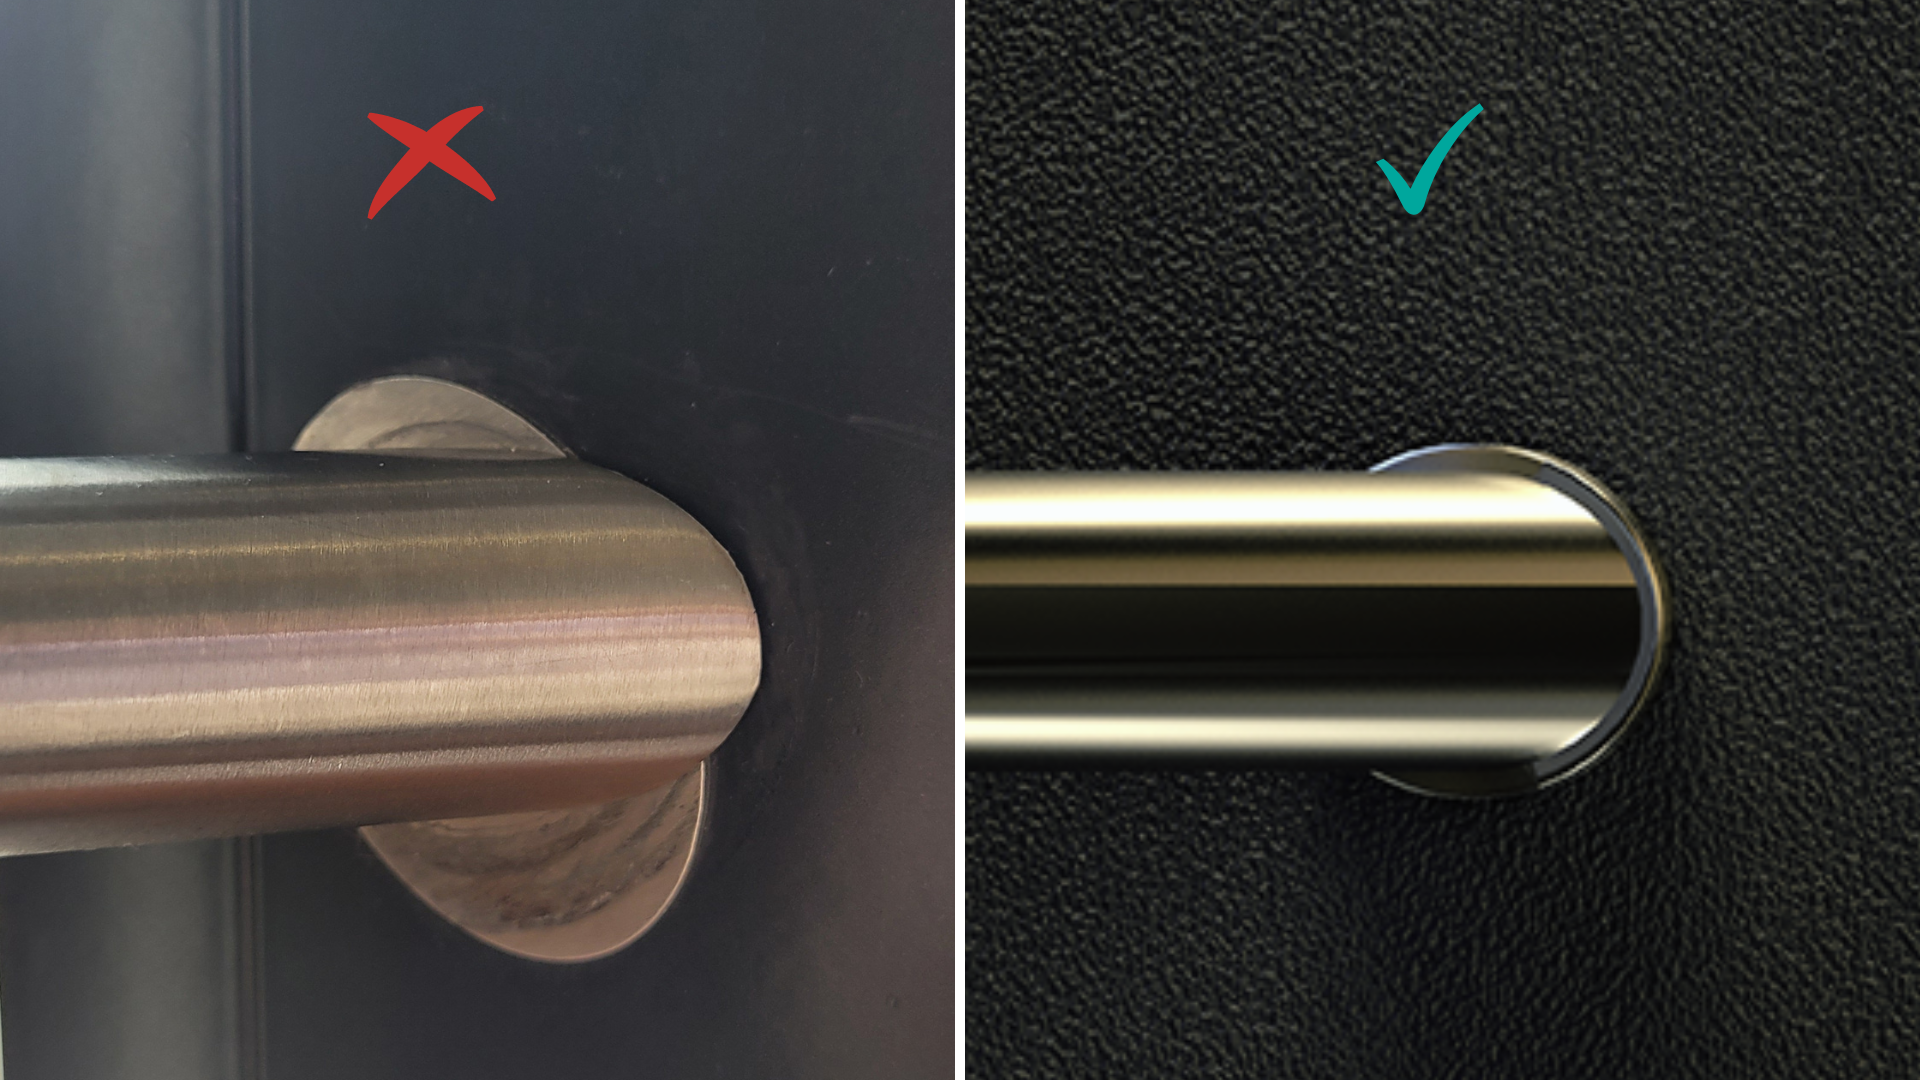 Primer napačno montirane rozete za okrogle nosilce ročajev za vhodna vrata in primer pravilno montirane rozete - Griffing